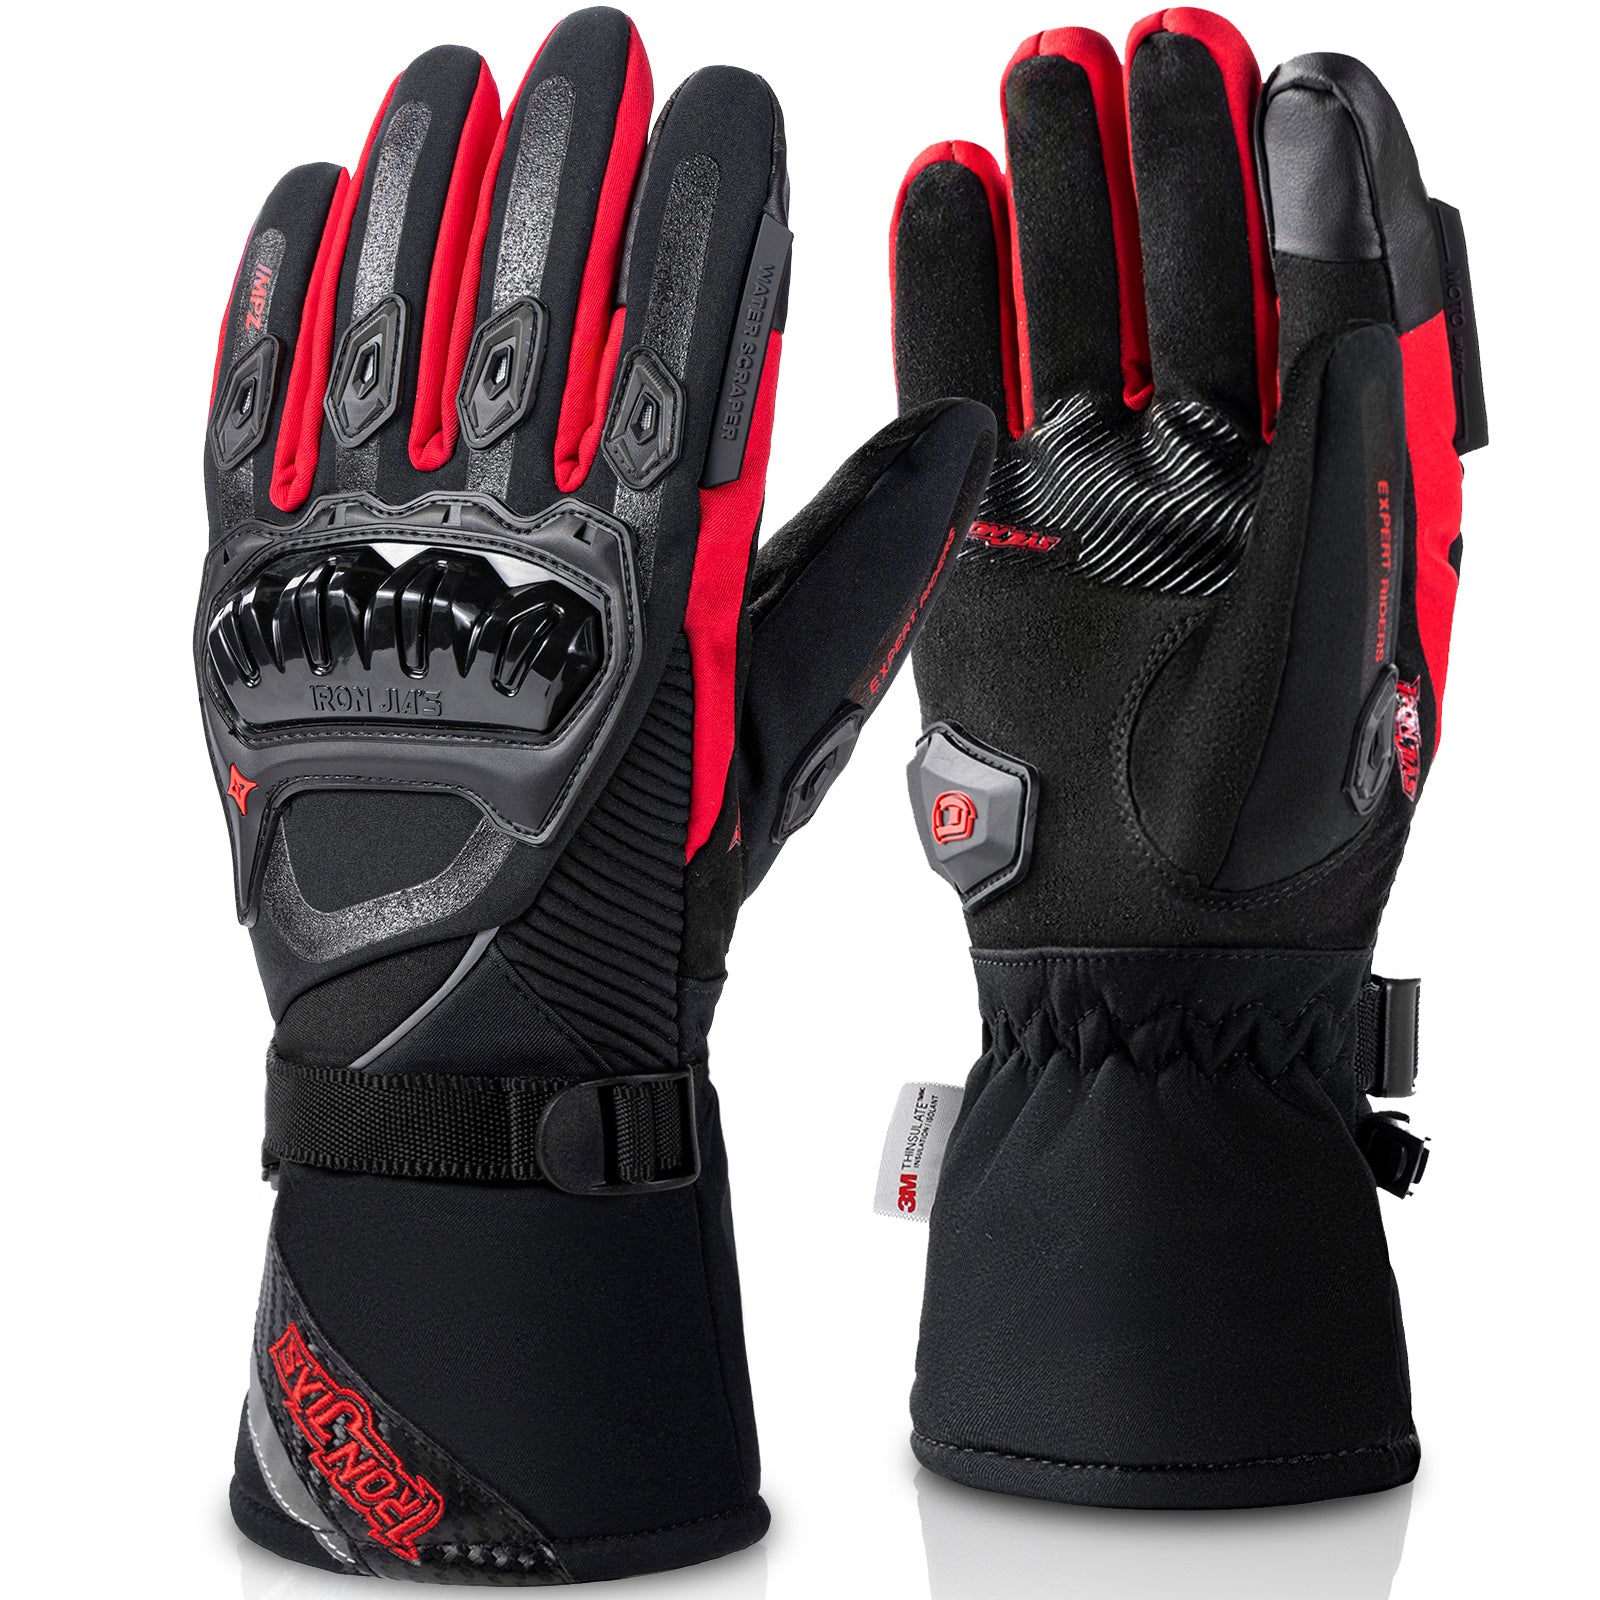 Red Waterproof Winter Motorcycle Gloves